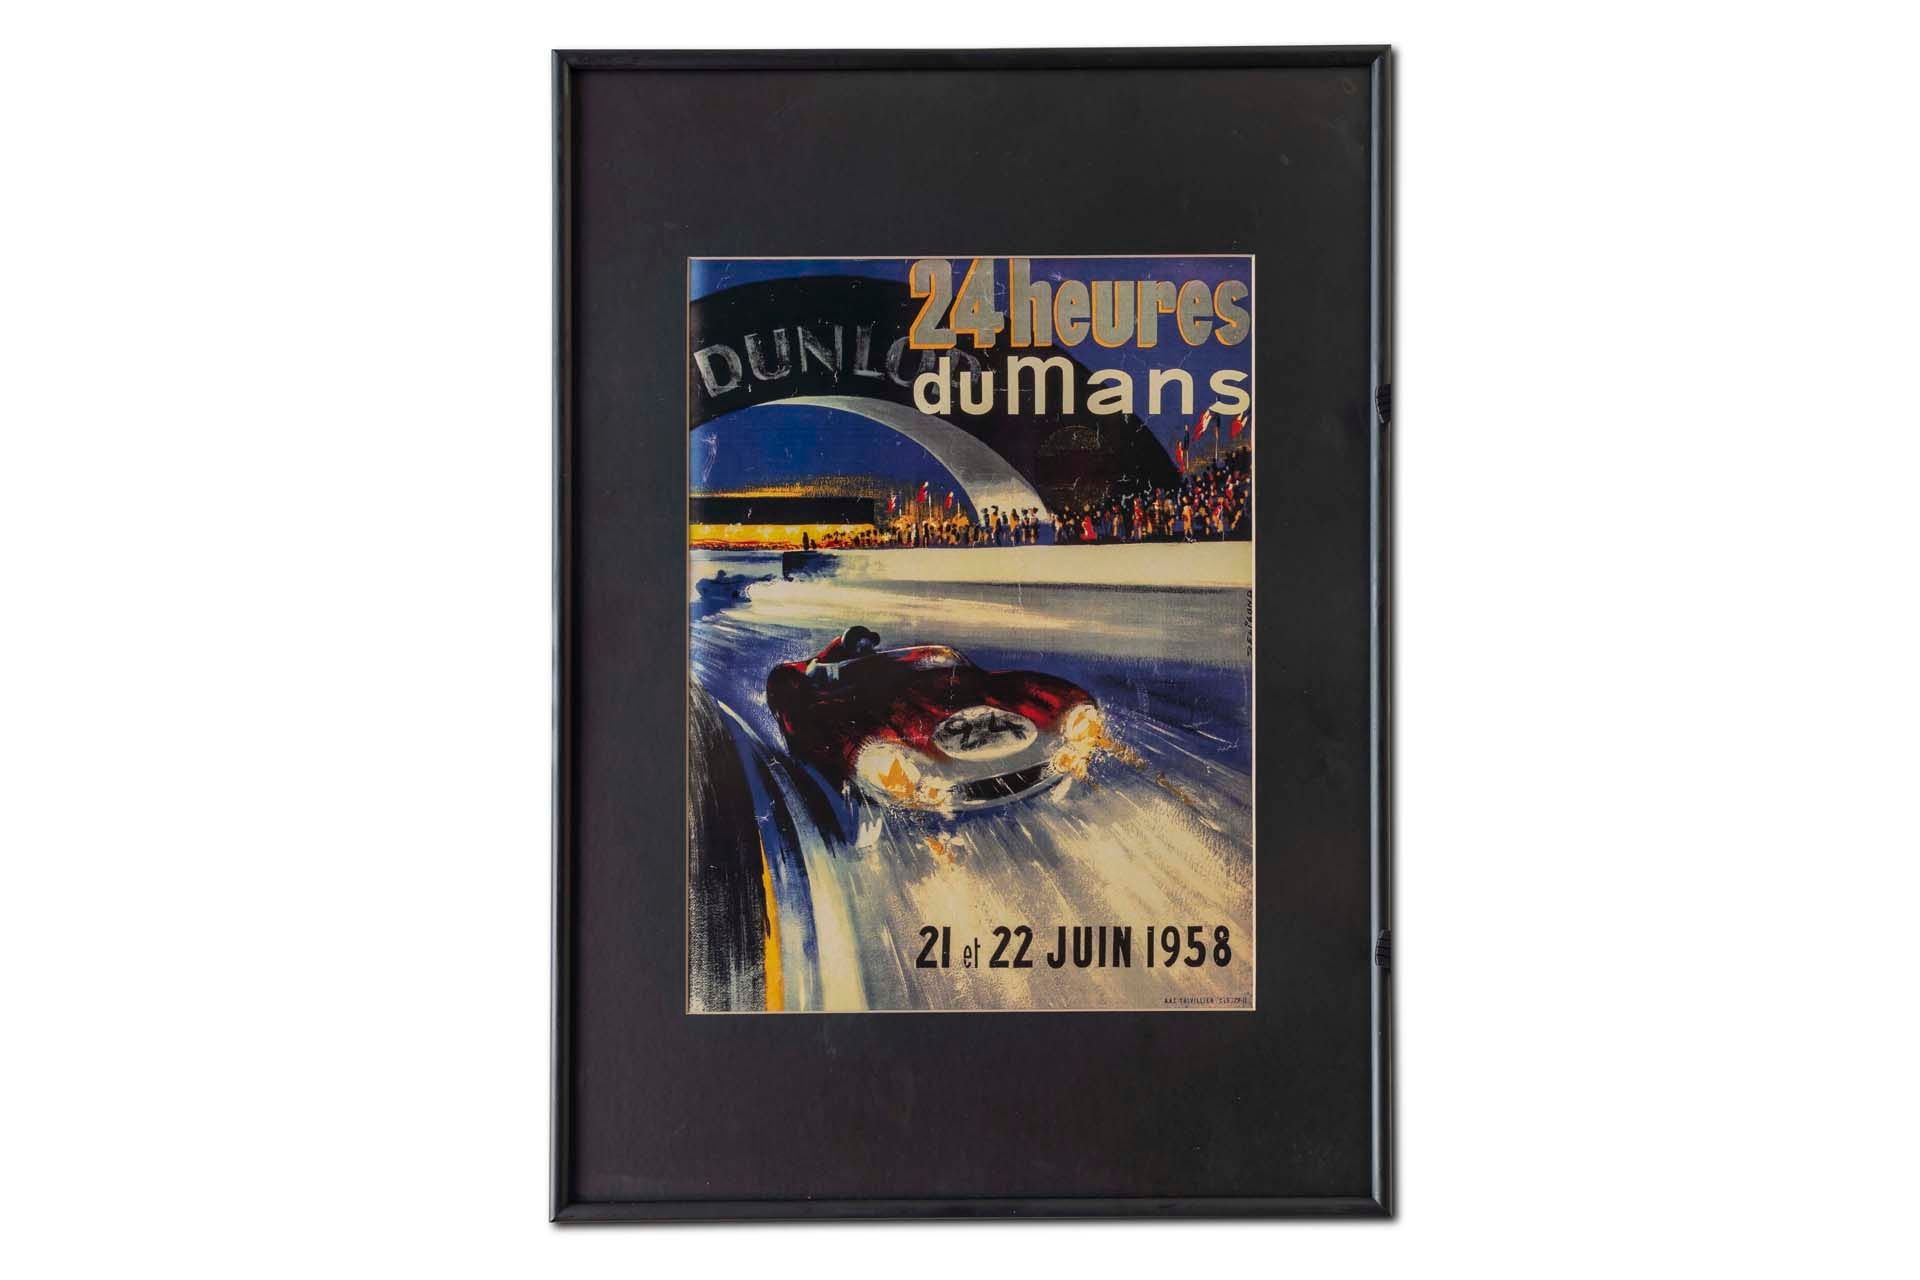 For Sale Framed Original '1958 24 heures du Mans' Event Poster